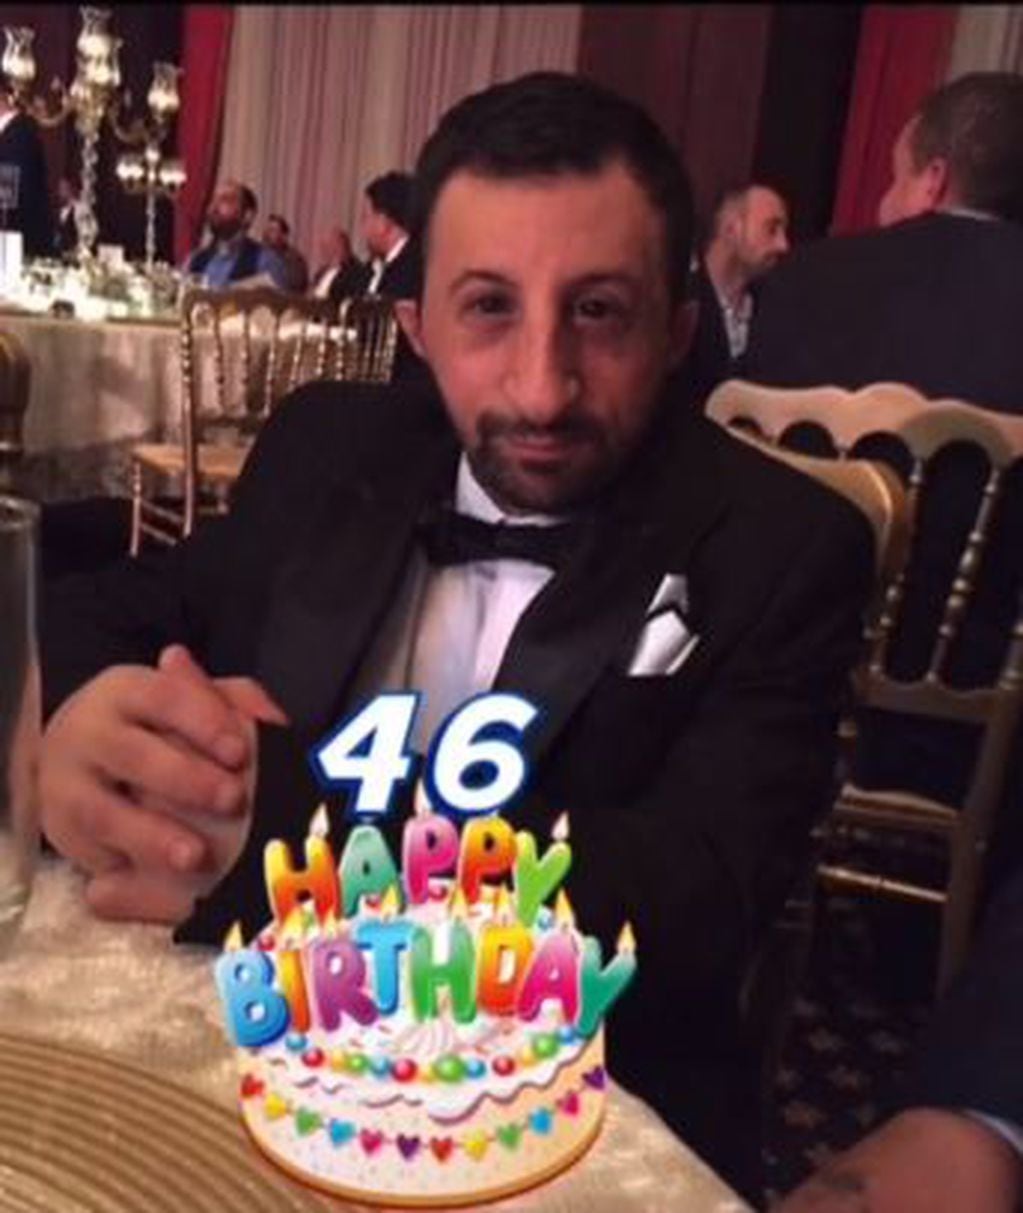 El famoso tiktoker Koksal Baba, alias "Nadie", festejó su cumpleaños número 46.